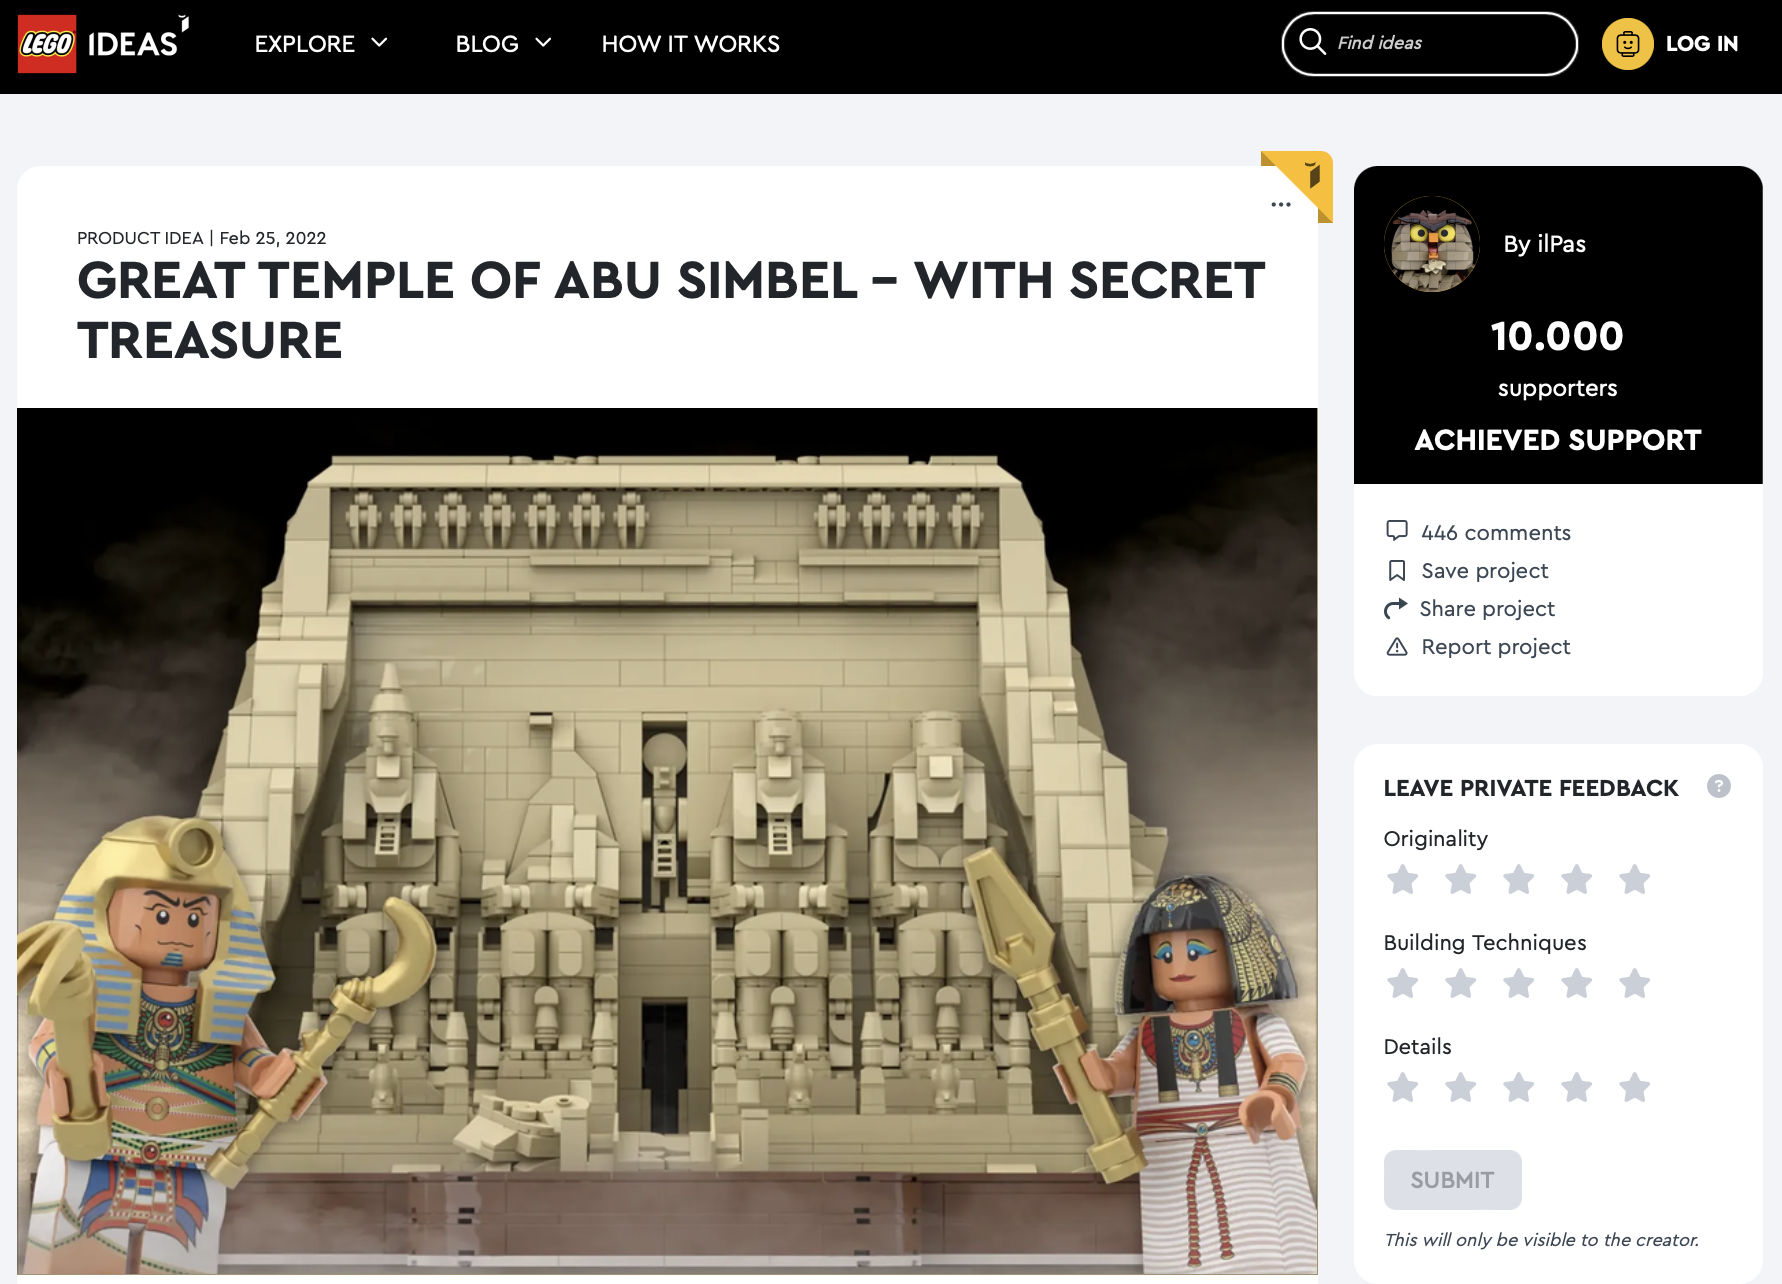 Great Temple of Abu Simbel – With Secret Treasure raggiunge i 10.000 like su LEGO Ideas